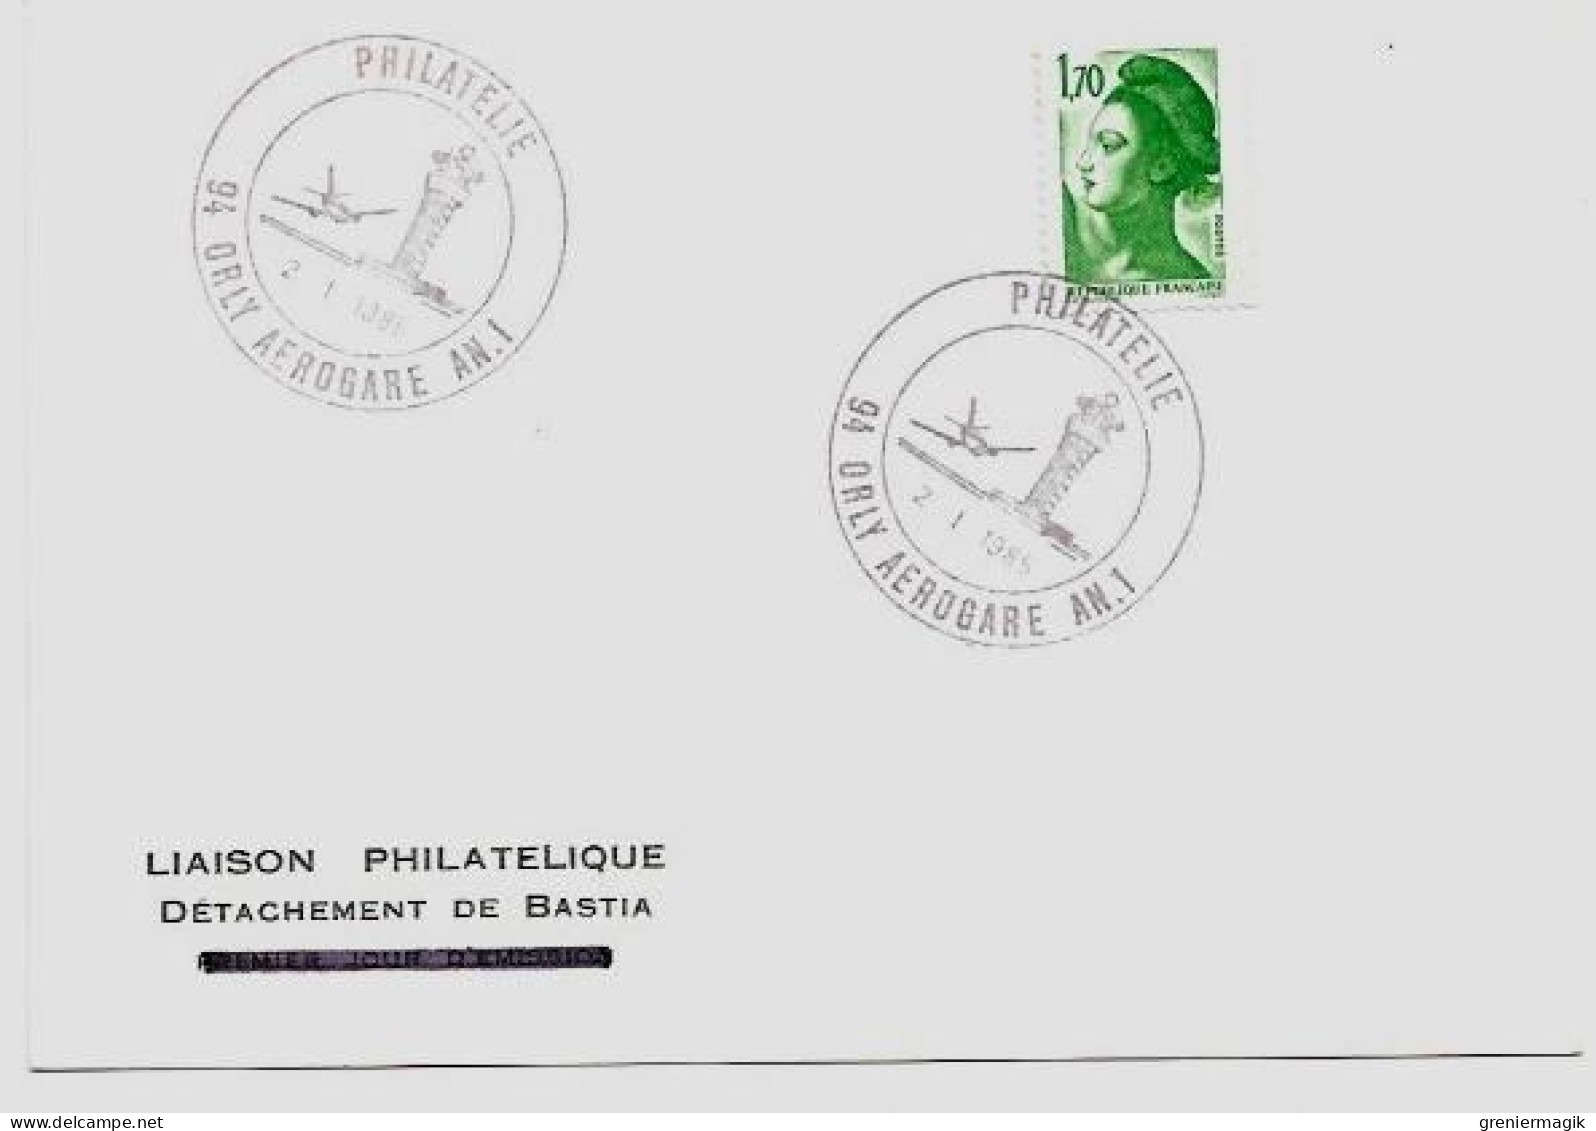 N°2318 Cachet Philatélie Orly Aérogare AN. 1 2/1/1985 (Tour De Contrôle) - Liaison Philatélique Bastia Liberté 1,70 Vert - Temporary Postmarks